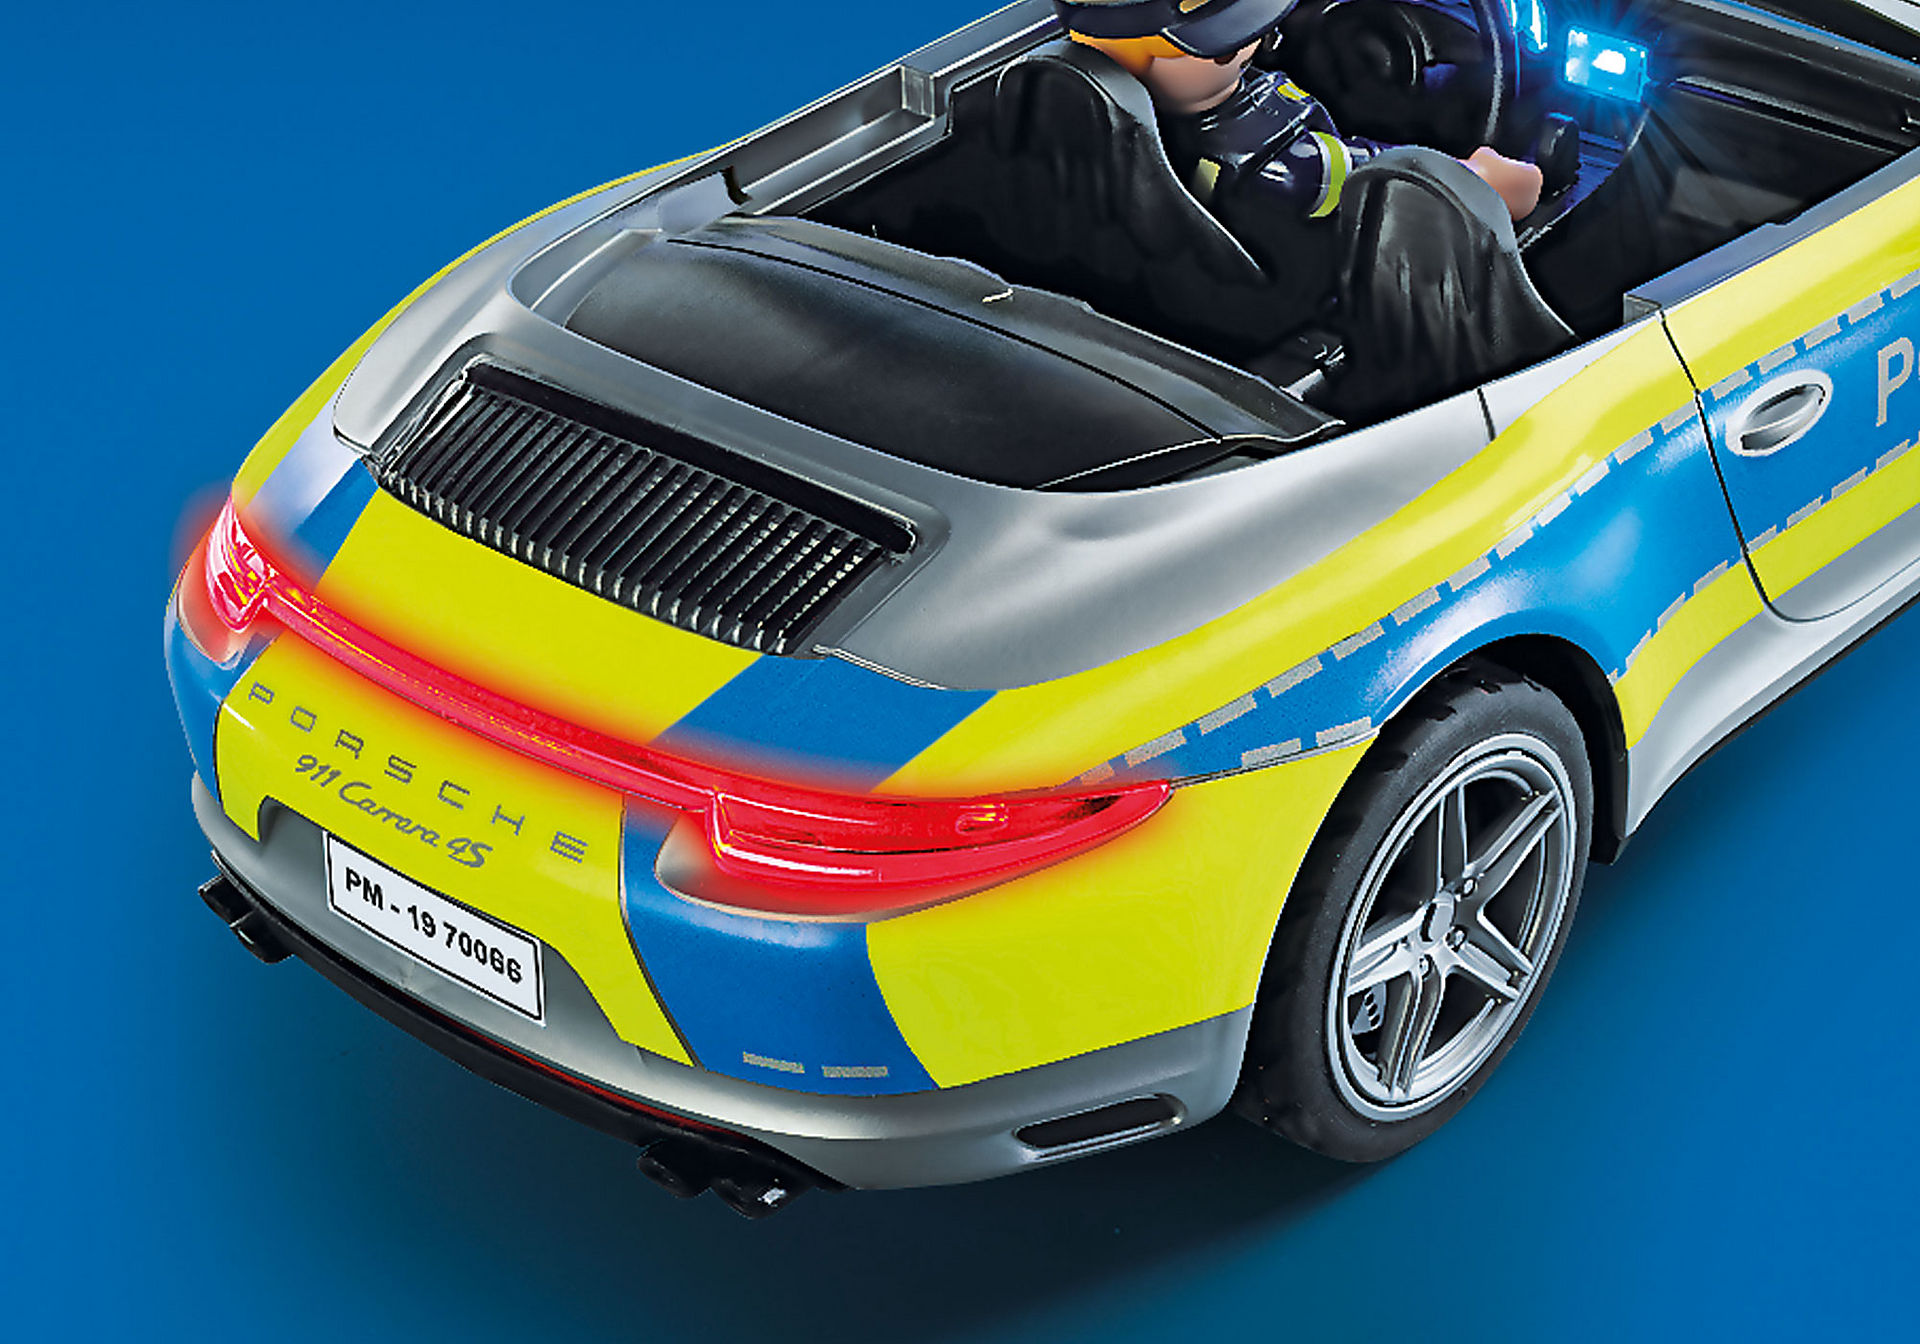 70066 Porsche 911 Carrera 4S Politie zoom image6